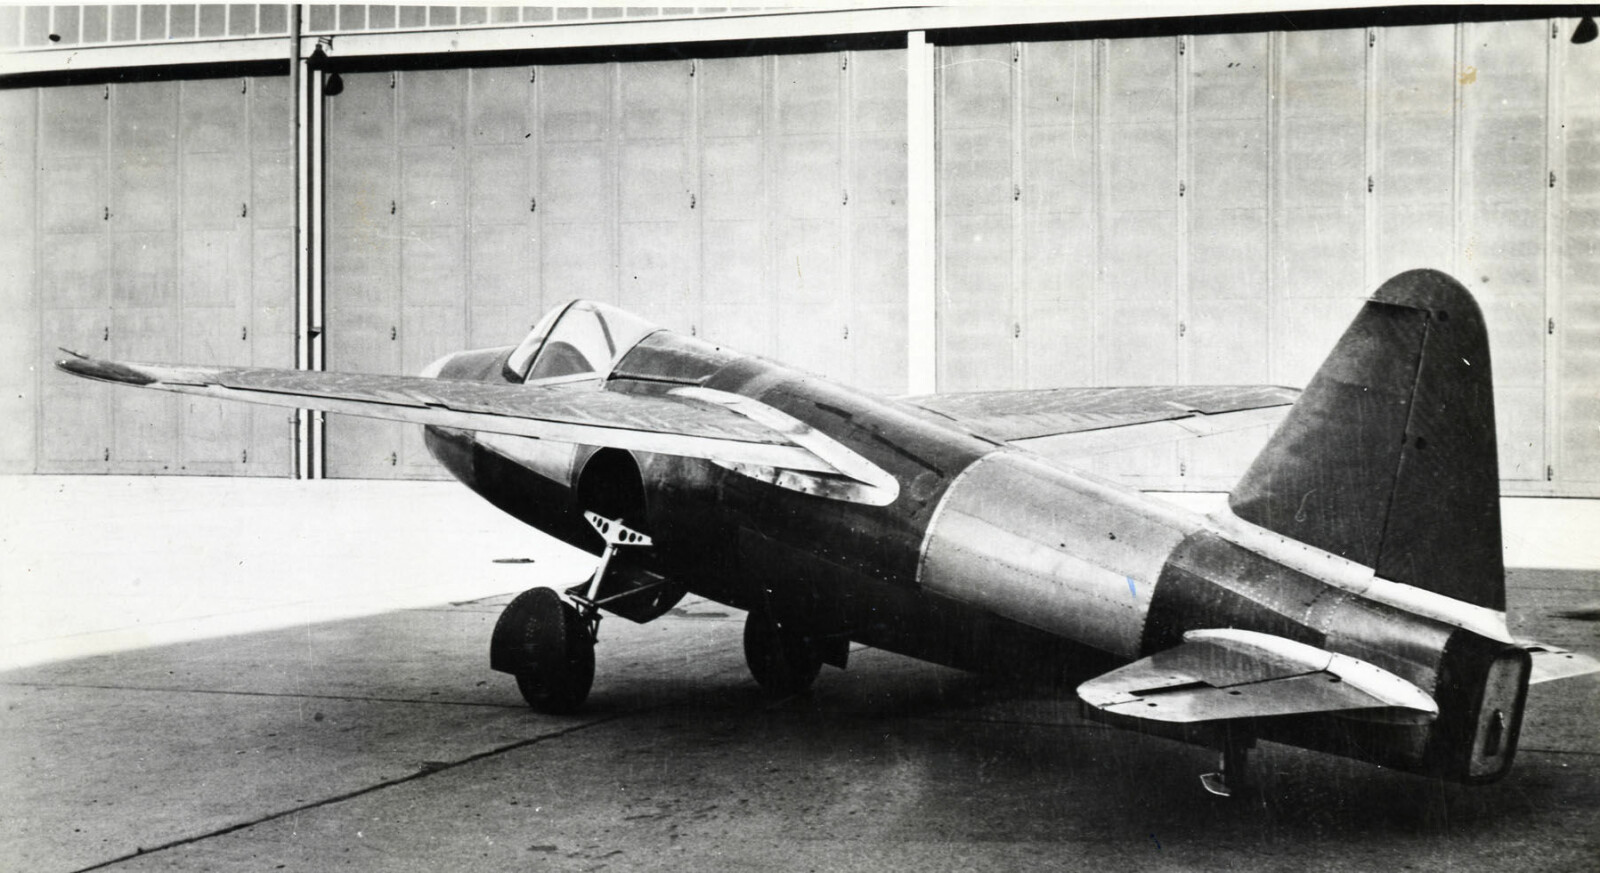 <b>ØDELAGT:</b> Det fantes bare ett Heinkel He 178. Det ble plassert i Deutsches Technikmuseum i Berlin, hvor det ble ødelagt i et bombeangrep i 1943.